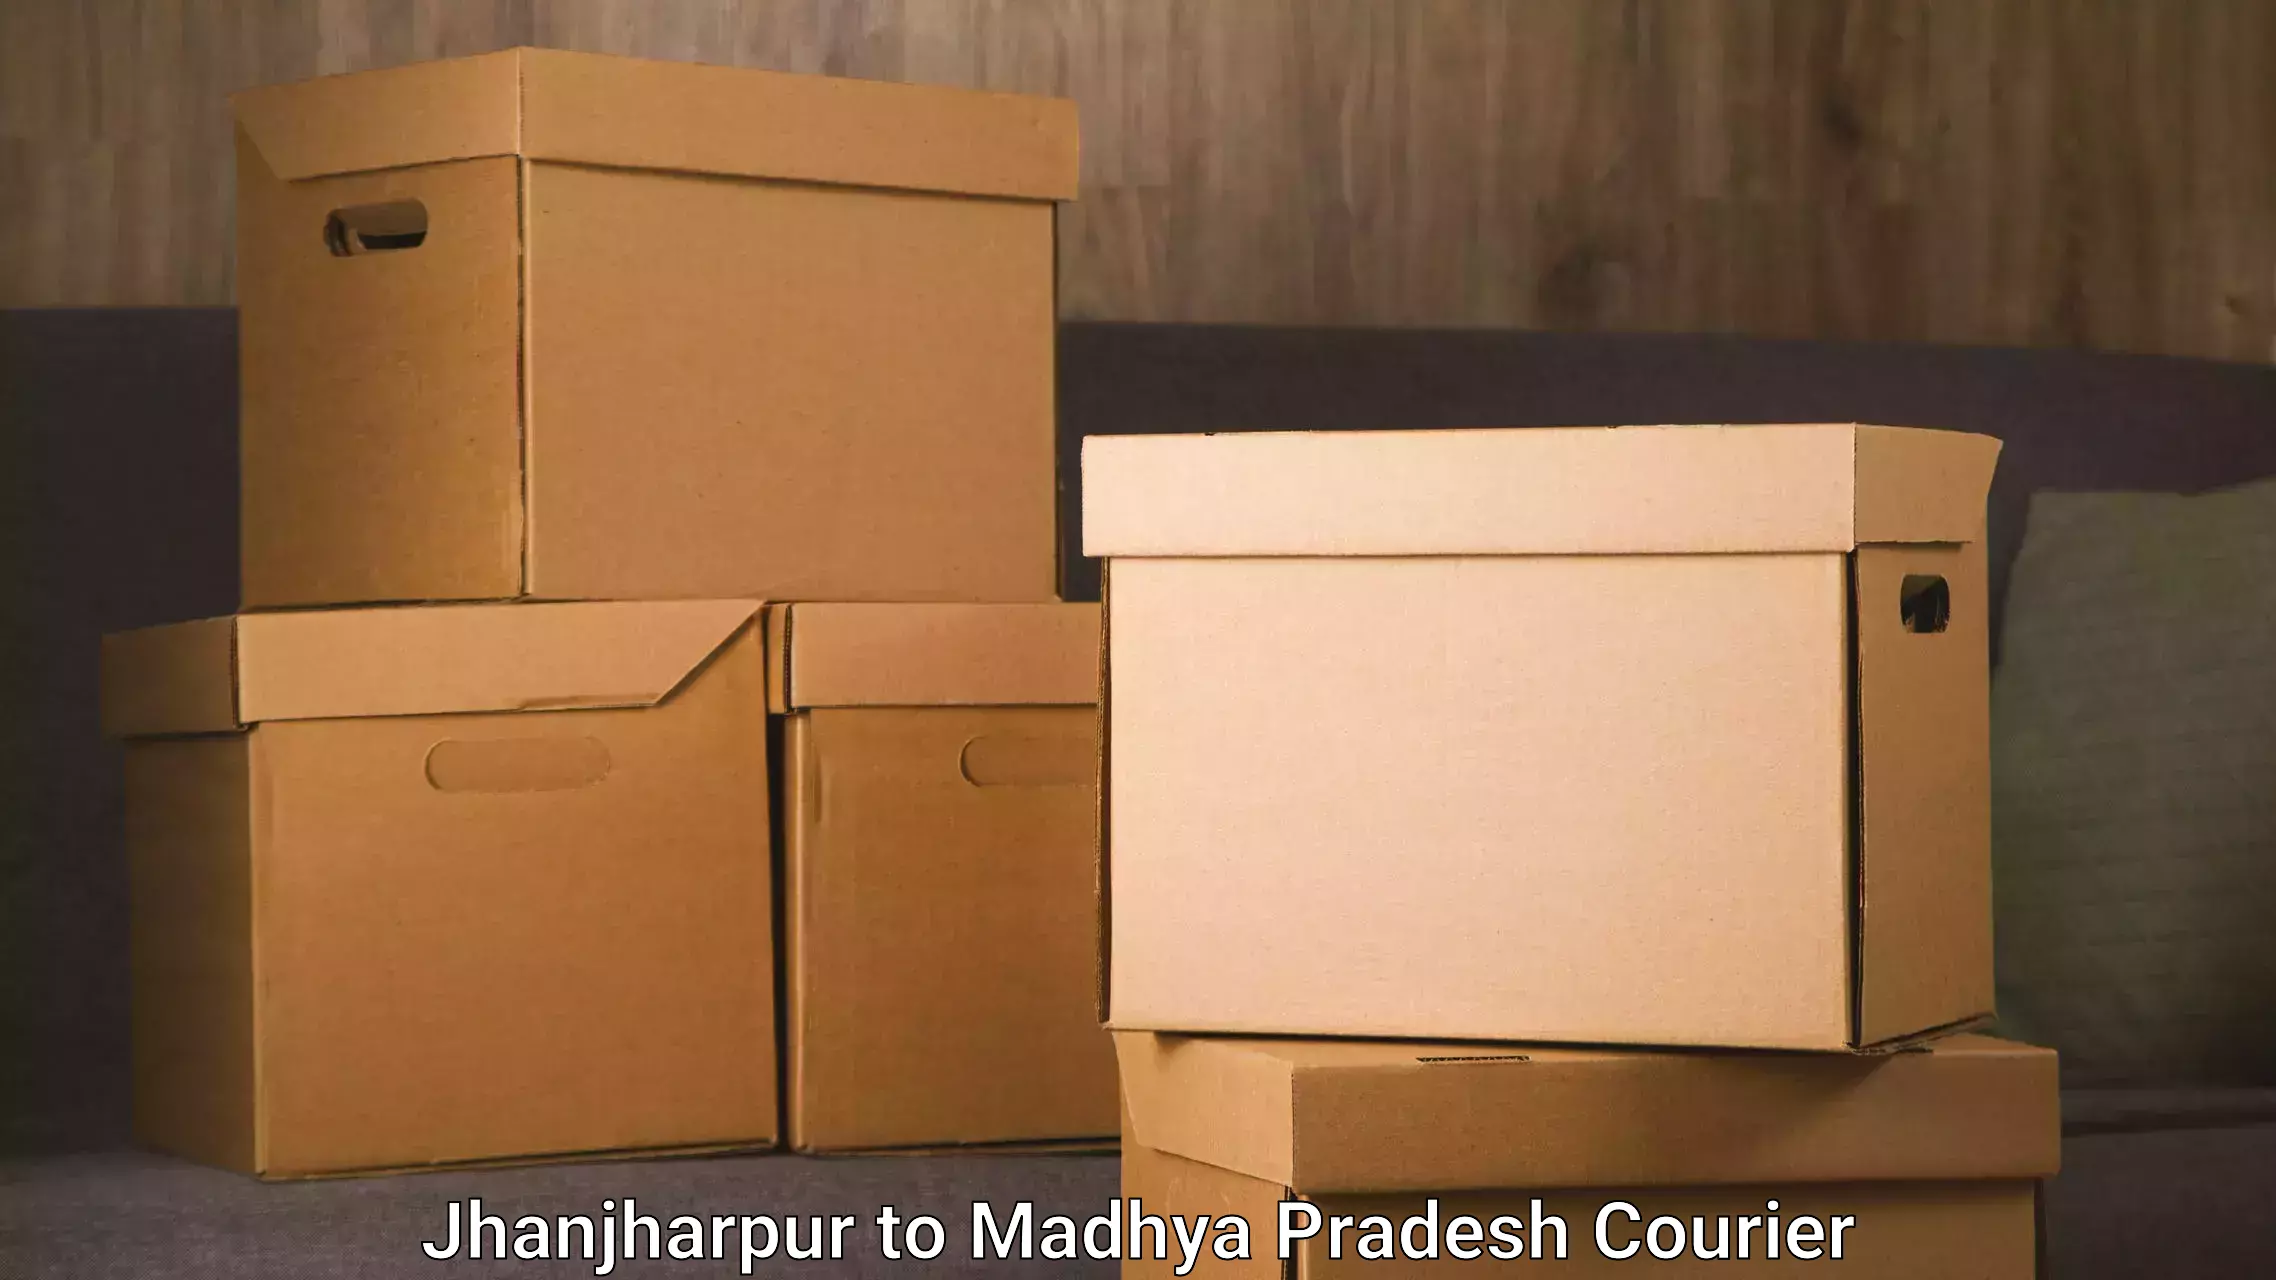 Specialized moving company Jhanjharpur to Rahatgarh